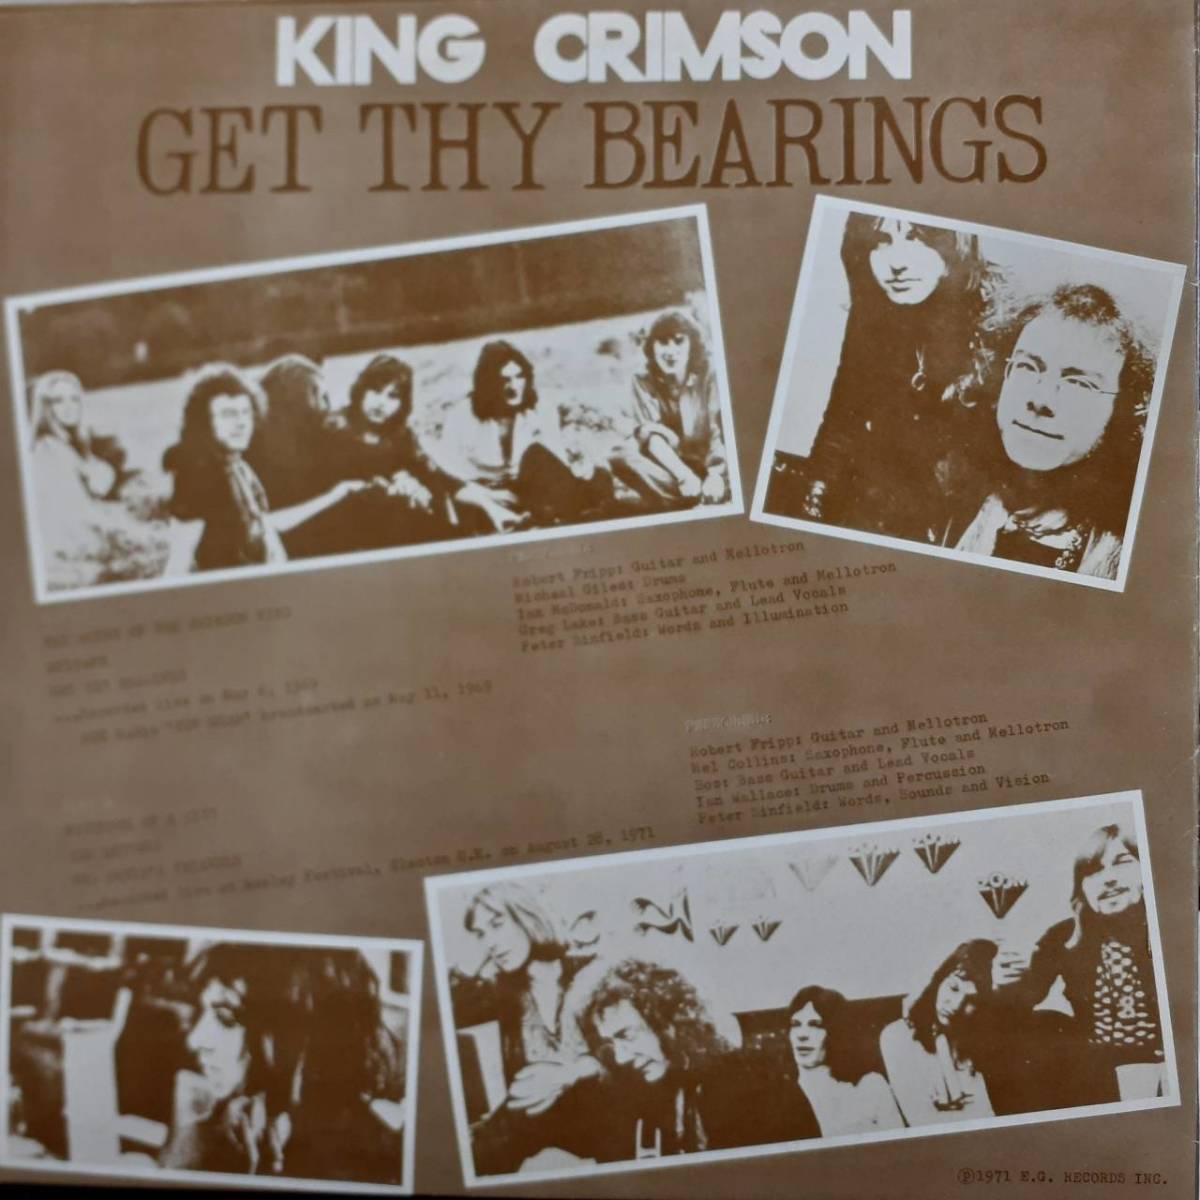  высококачественный звук private запись LP!King Crimson / Get Thy Bearings 1971 год KC 1098 69 год. BBC радио .71 год. LIVE источник звука King * Crimson T-Rex